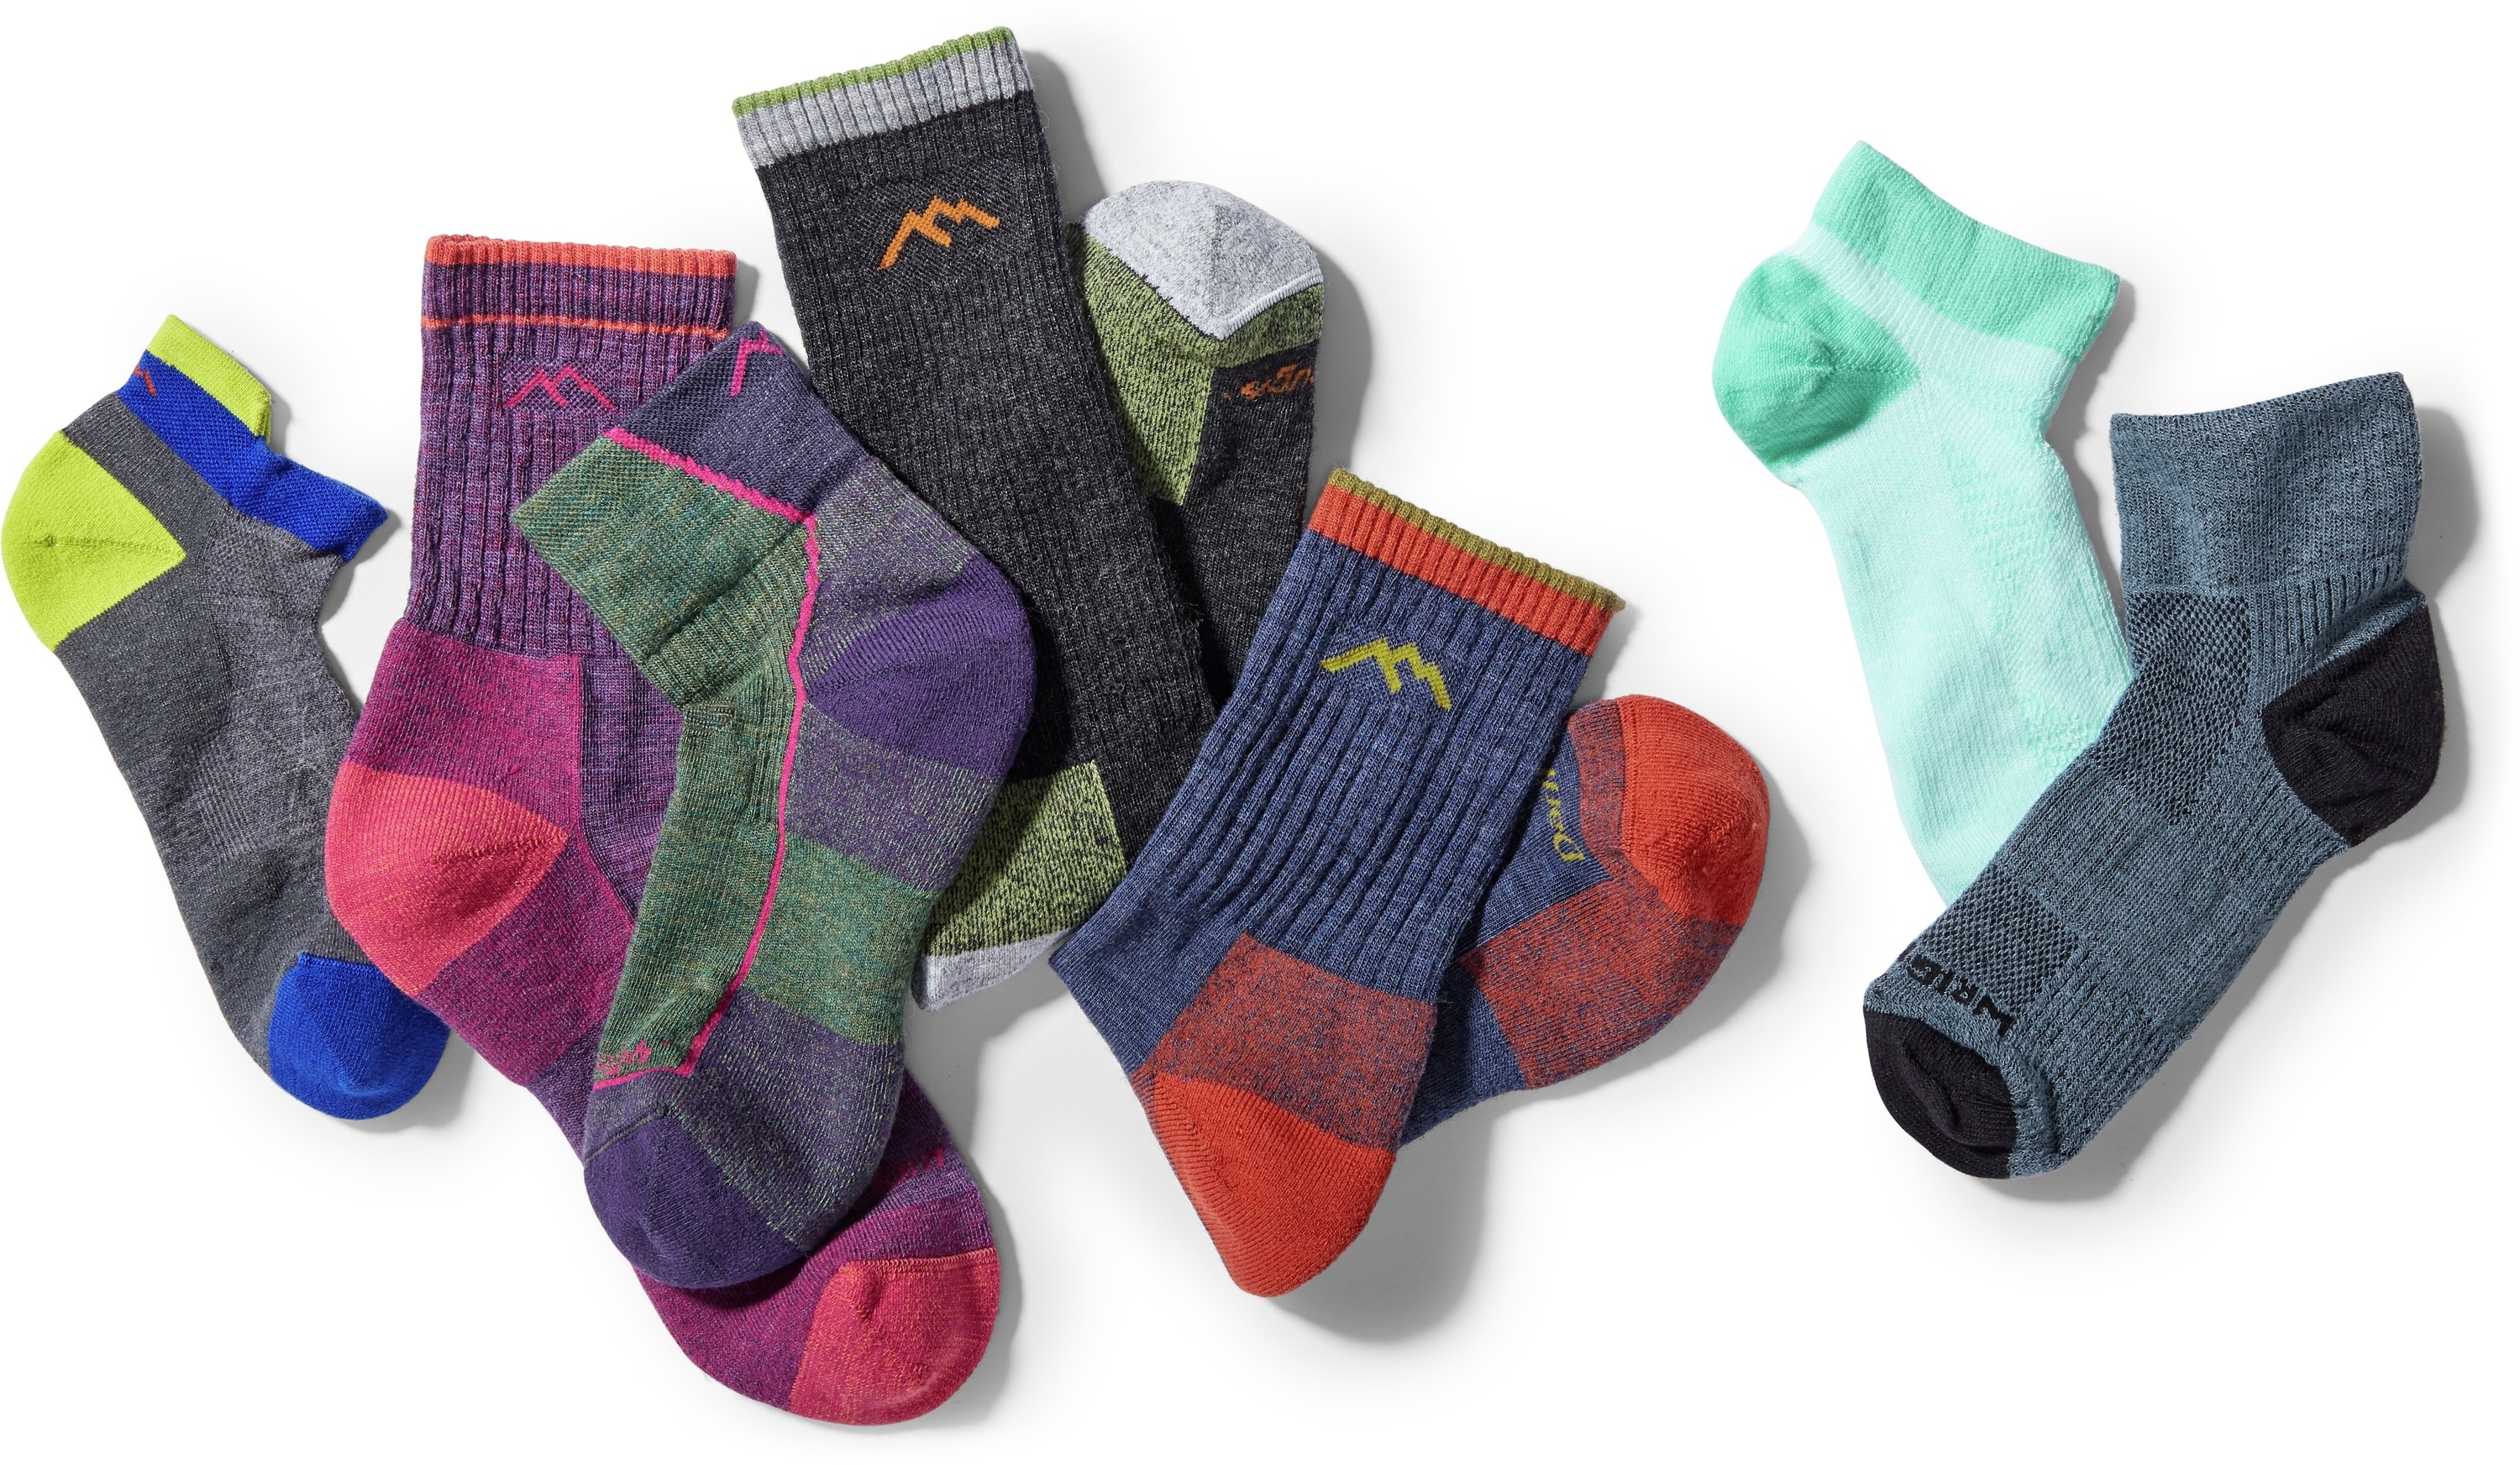 a dozen or so multicolored, thick hiking socks